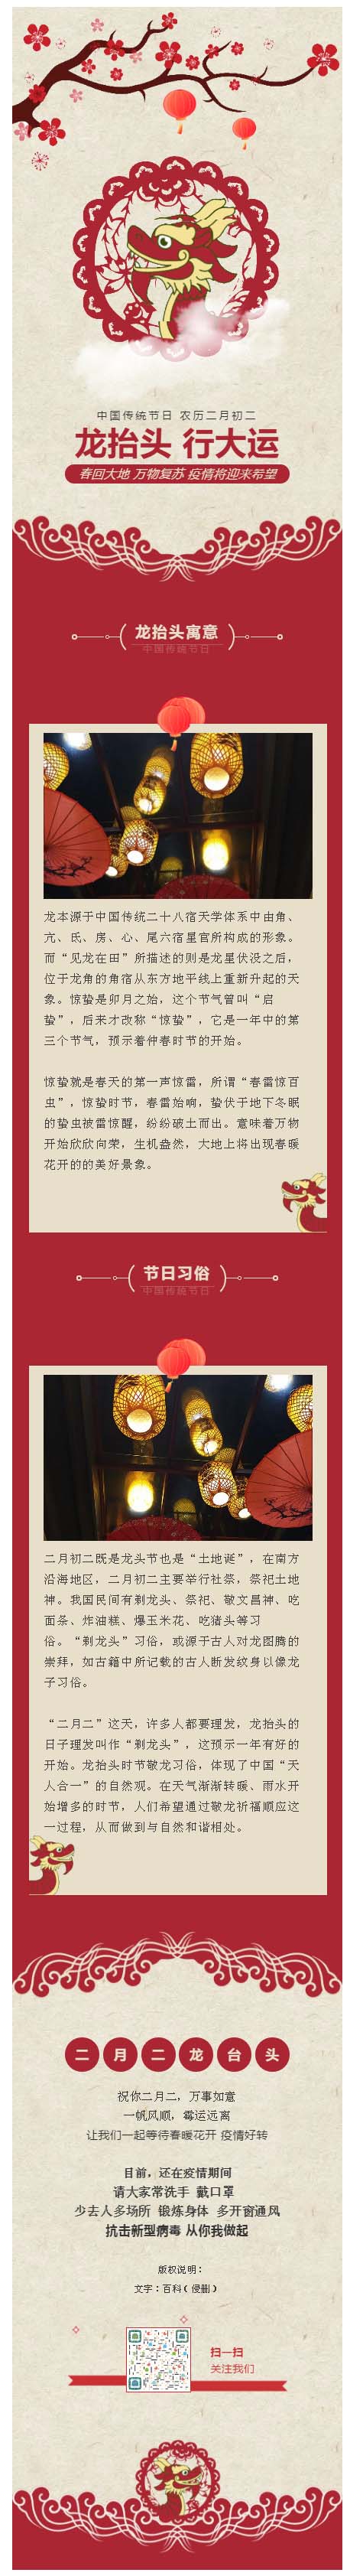 中国传统节日农历二月二龙抬头红色风格模板微信推送图文素材推文模板